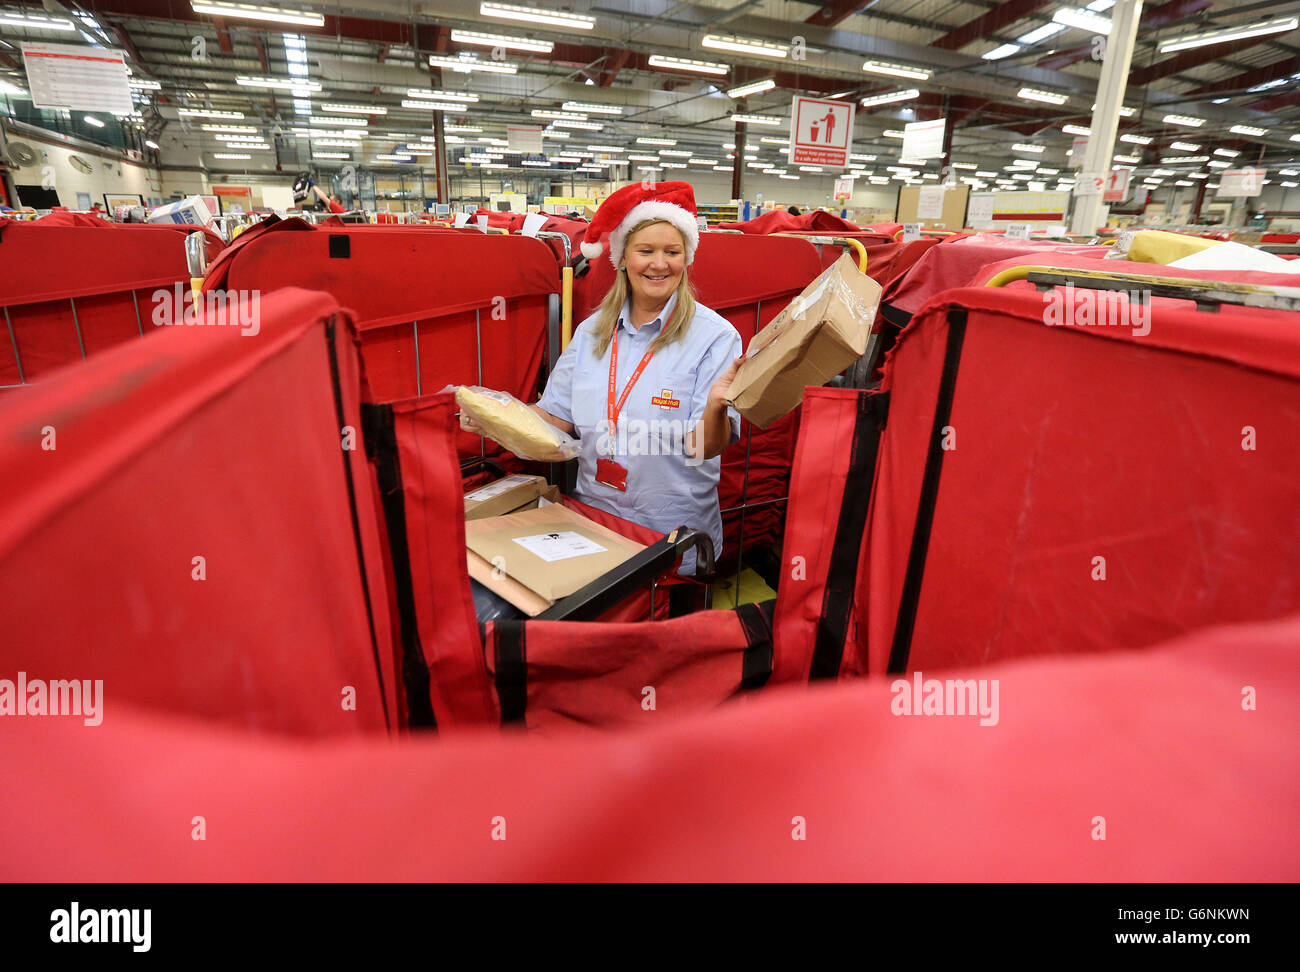 Royal Mail-Mitarbeiter June Gilliam, mit Weihnachtspost im Glasgow Mail Center, während des geschäftigsten Tages von Royal Mail im Jahr, an dem die Mitarbeiter erwarten, bis zu 2.8 Millionen Poststücke zu bearbeiten, während sie arbeiten, um sicherzustellen, dass die Post rechtzeitig für Dezember 25 ankommt. Stockfoto